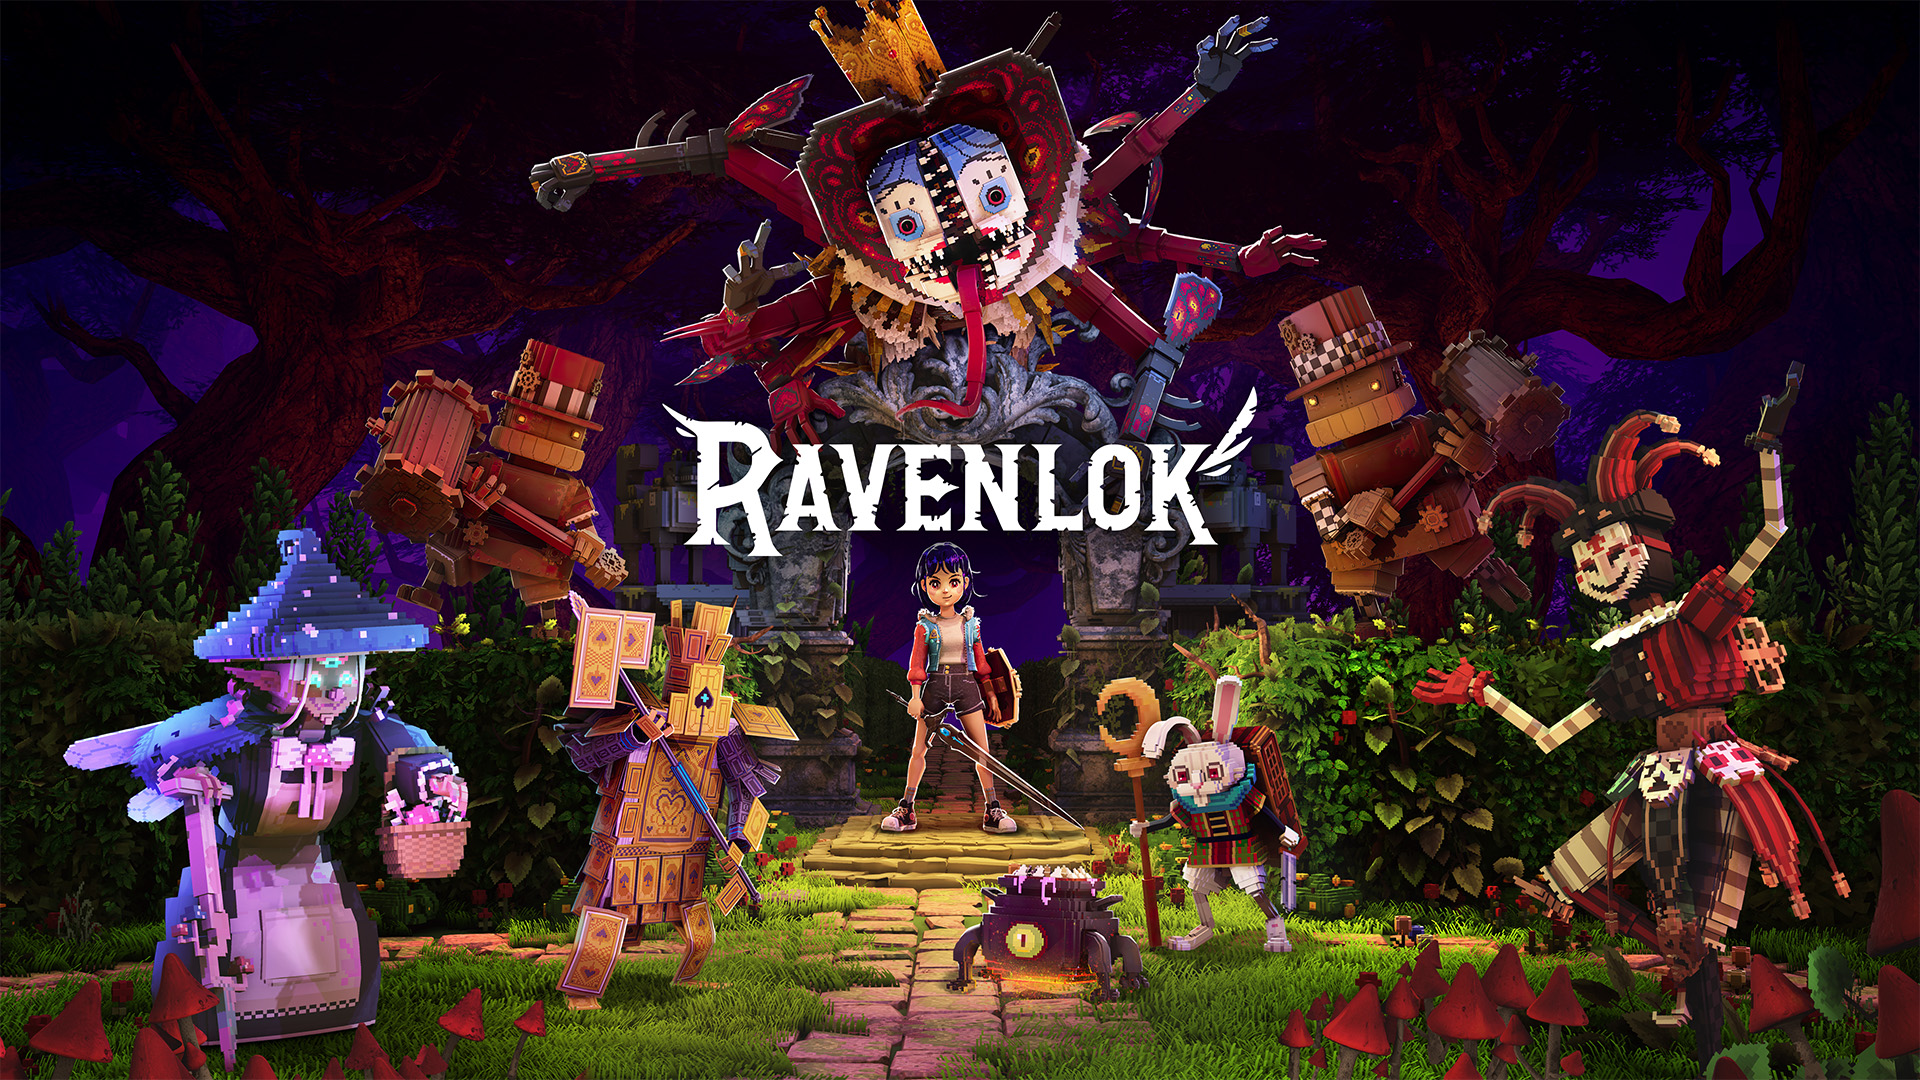 Video For Plongez dans le monde fantastique de Ravenlok, disponible l’année prochaine dans le Game Pass